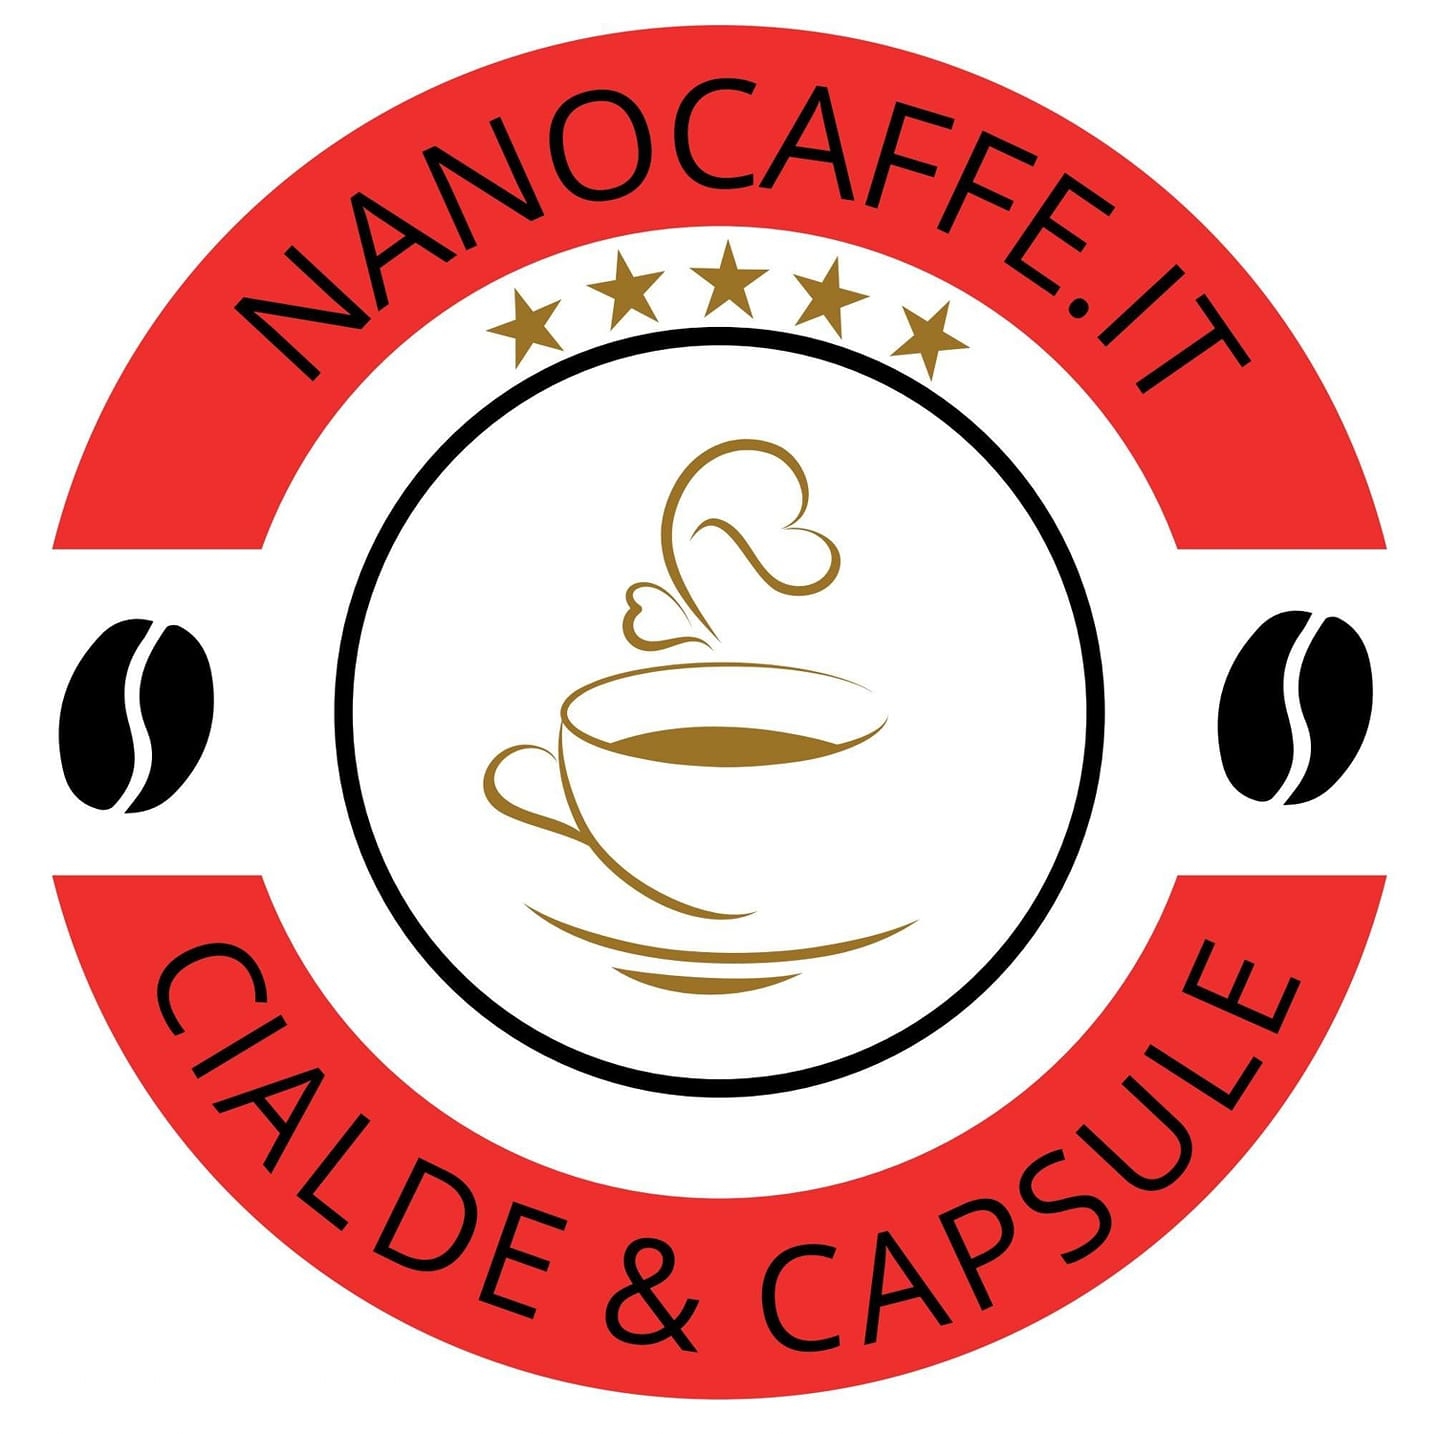 nano caffè sito web nanocaffe.it cialde e capsule